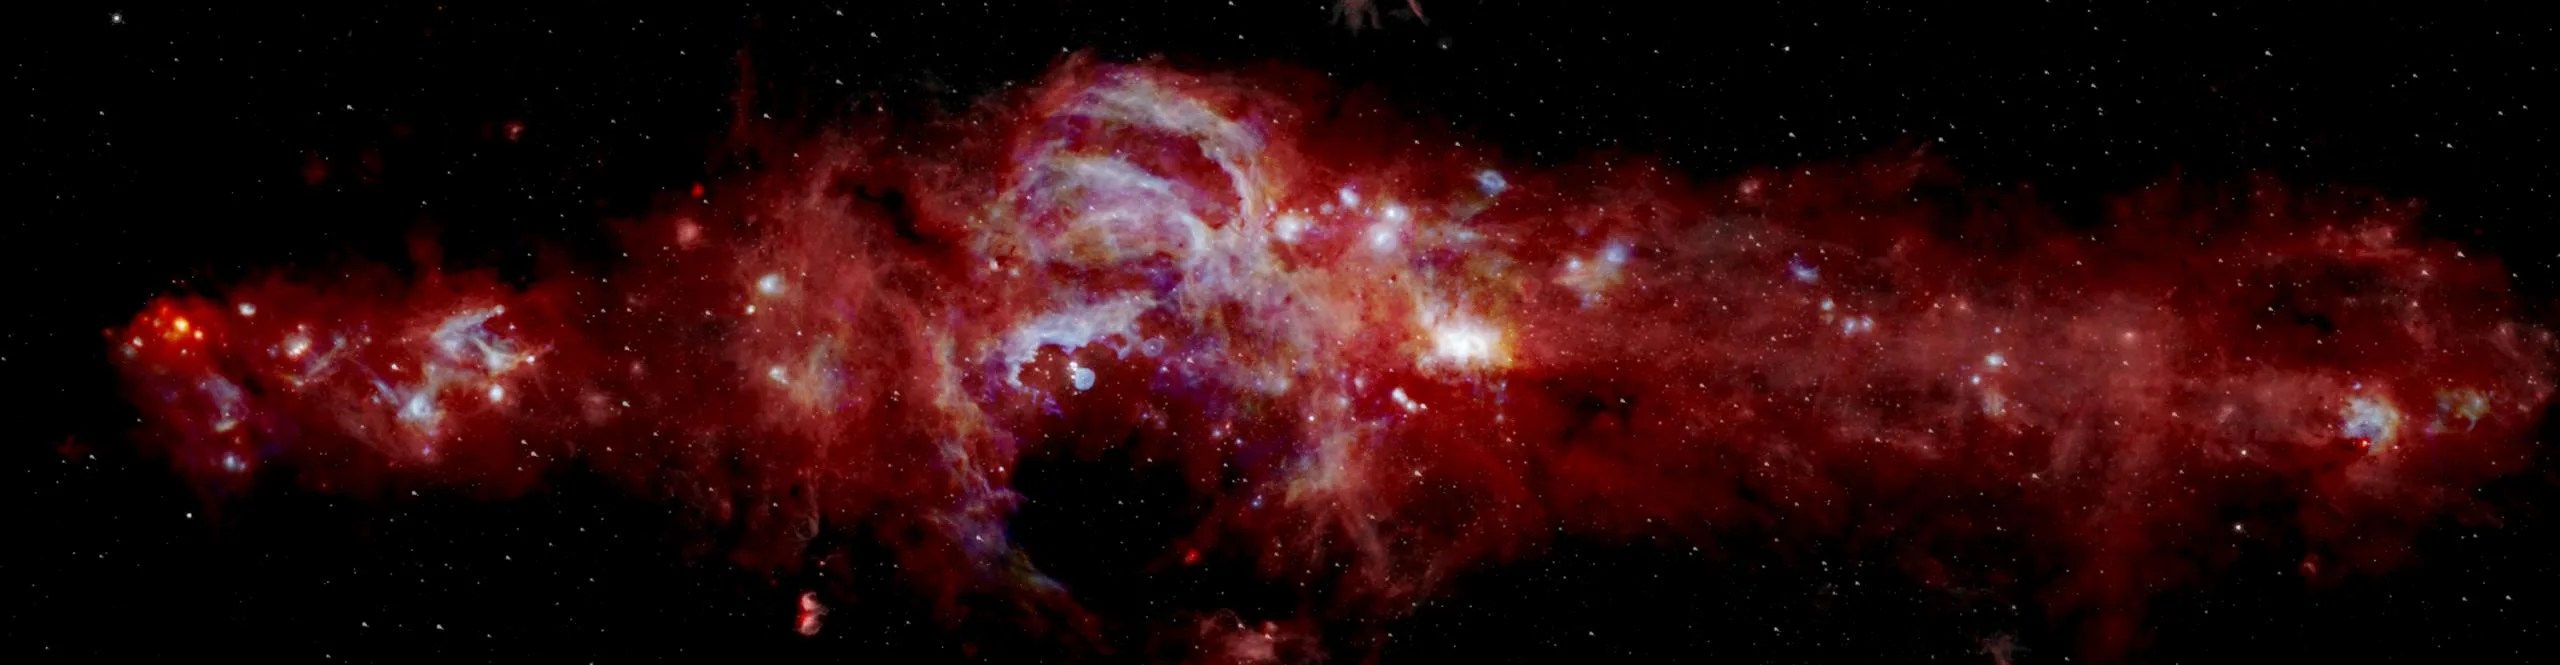 Imagen infrarroja compuesta del centro de nuestra Vía Láctea. Abarca más de 600 años luz y está ayudando a los científicos a saber cuántas estrellas masivas se están formando en el centro de la galaxia. Los datos de SOFIA (azul y verde) se combinan con los del Observatorio Espacial Herschel (rojo) y el telescopio espacial Spitzer (blanco). La vista de SOFIA reveló características que nunca se habían visto antes. Créditos: NASA/SOFIA/JPL-Caltech/ESA/Herschel